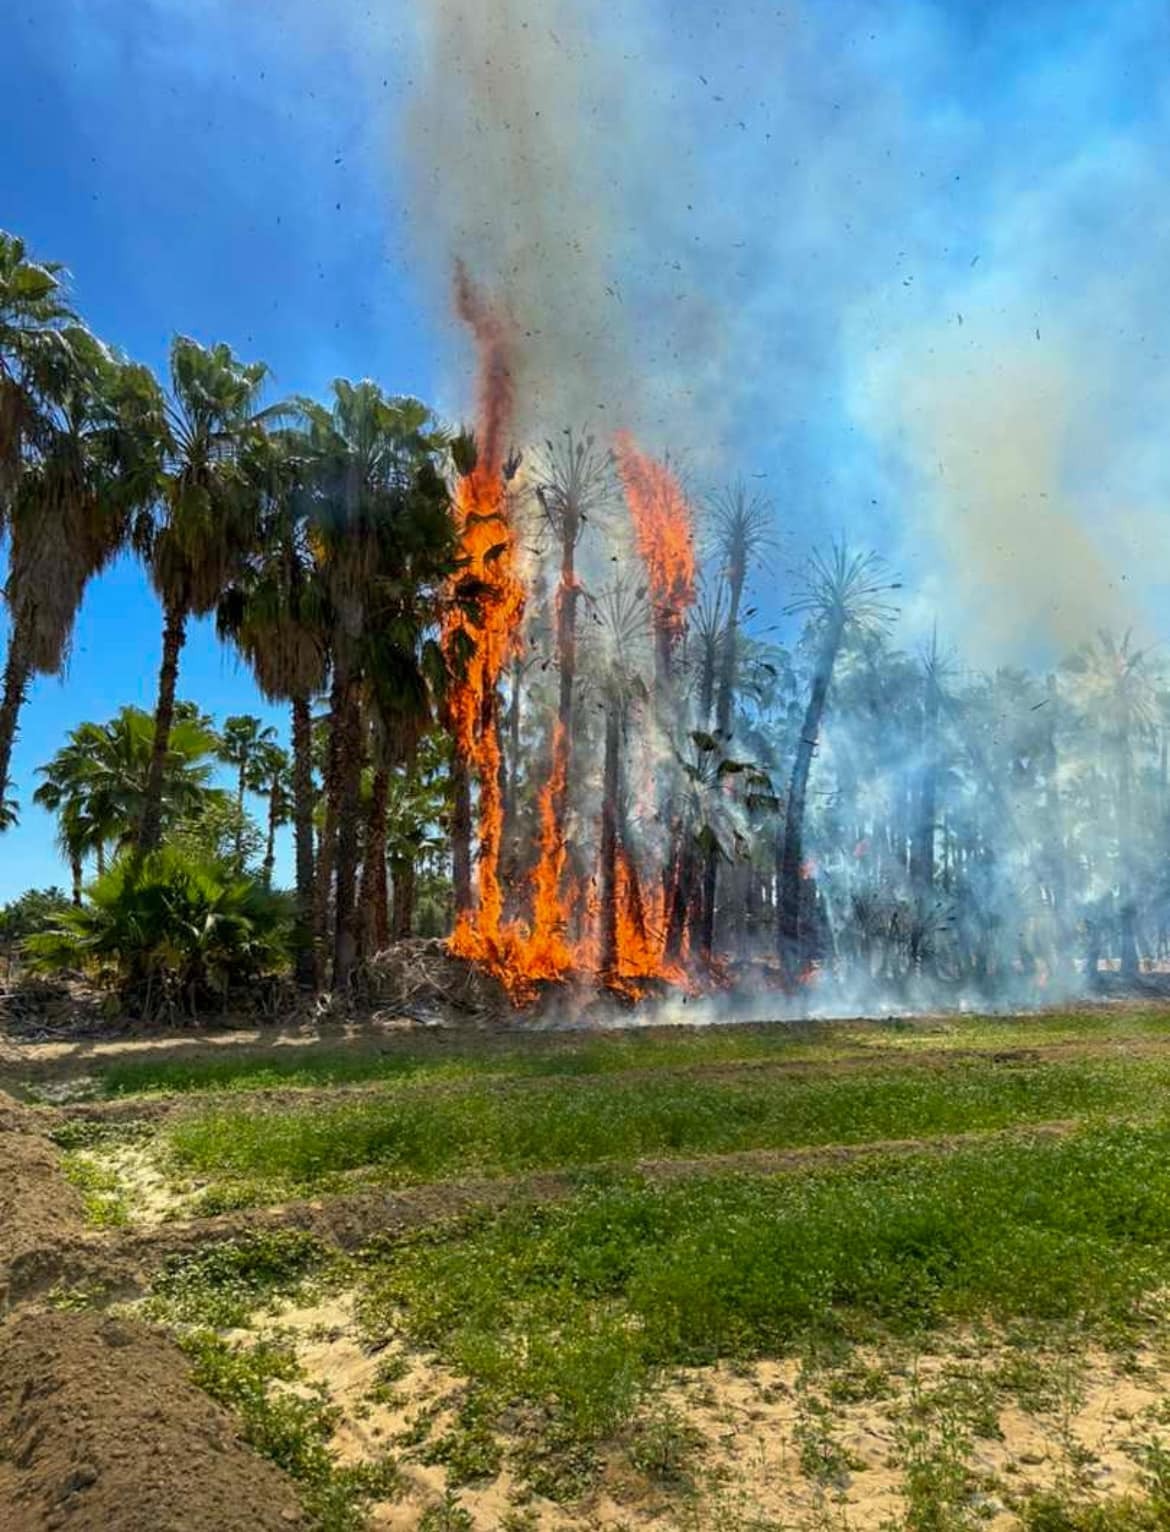 Un fuerte incendio registrado la mañana de este viernes afectó un estimado de 4.5 hectáreas del palmar de Santa Rosa, en San José del Cabo.